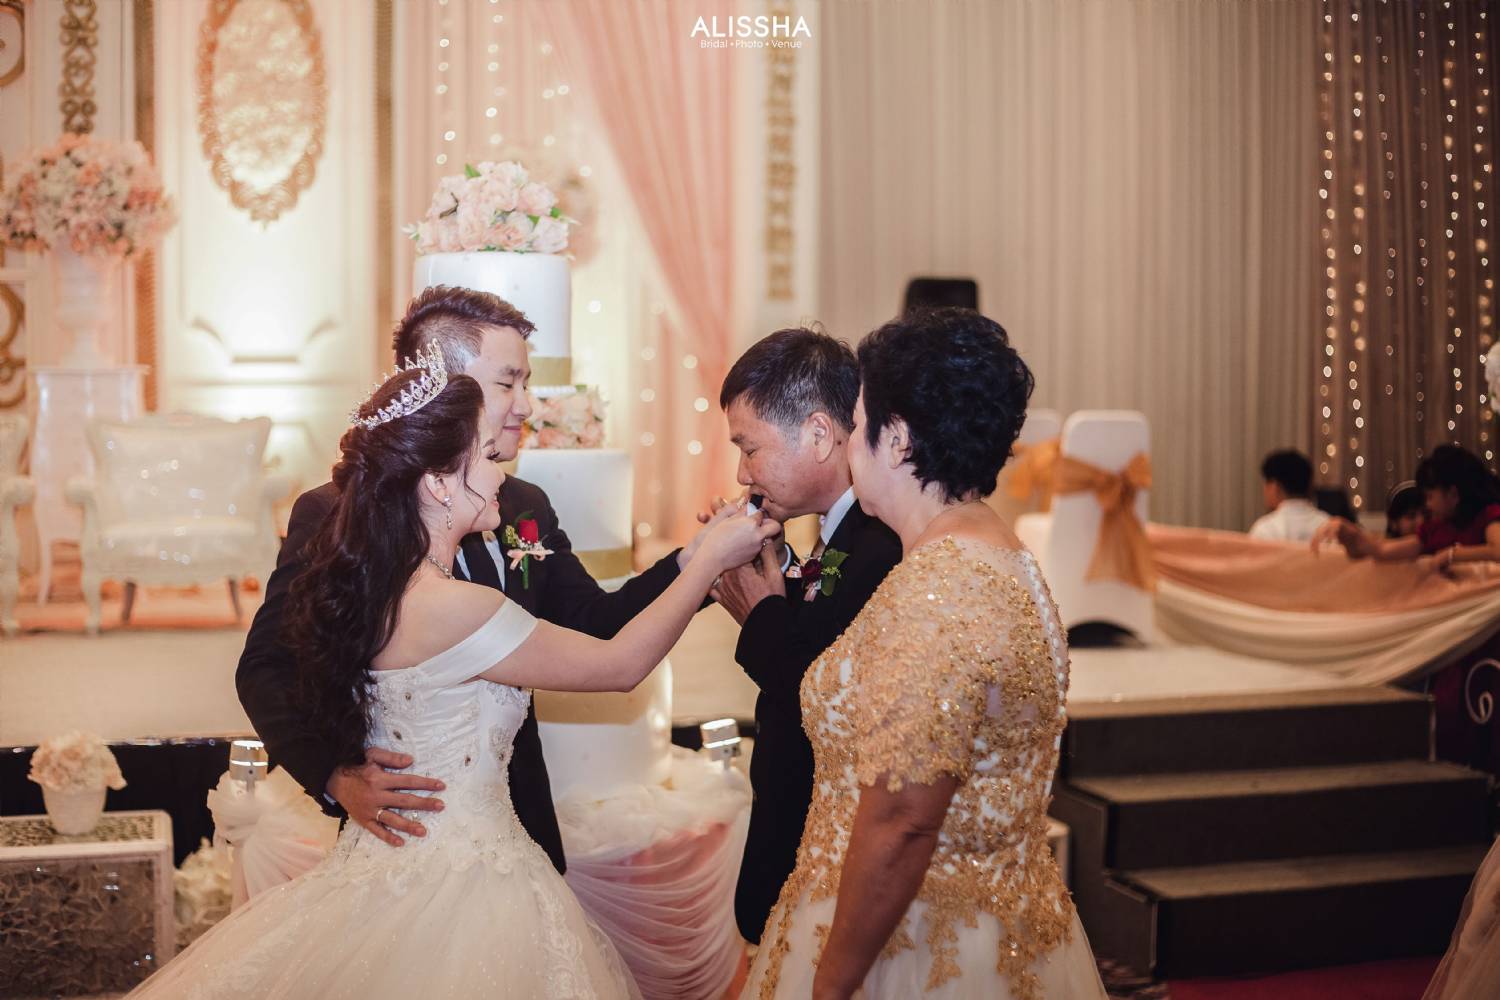 Wedding Day Mardiana & Zainal 30-06-2019 4